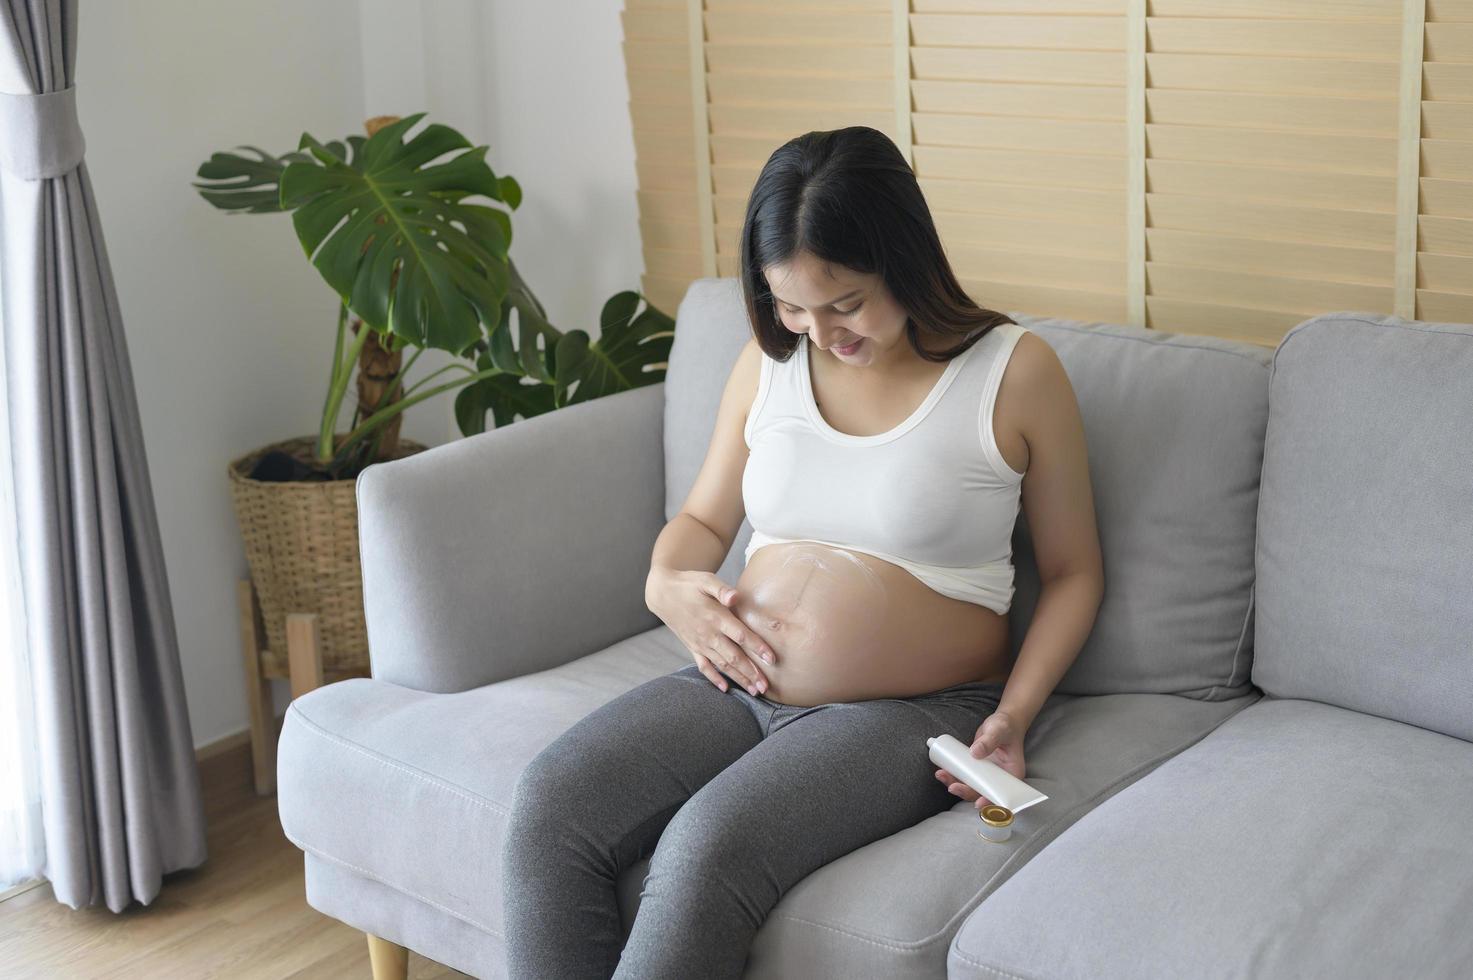 jonge zwangere vrouw die vochtinbrengende crème aanbrengt op buik, gezondheidszorg en zwangerschapszorg foto